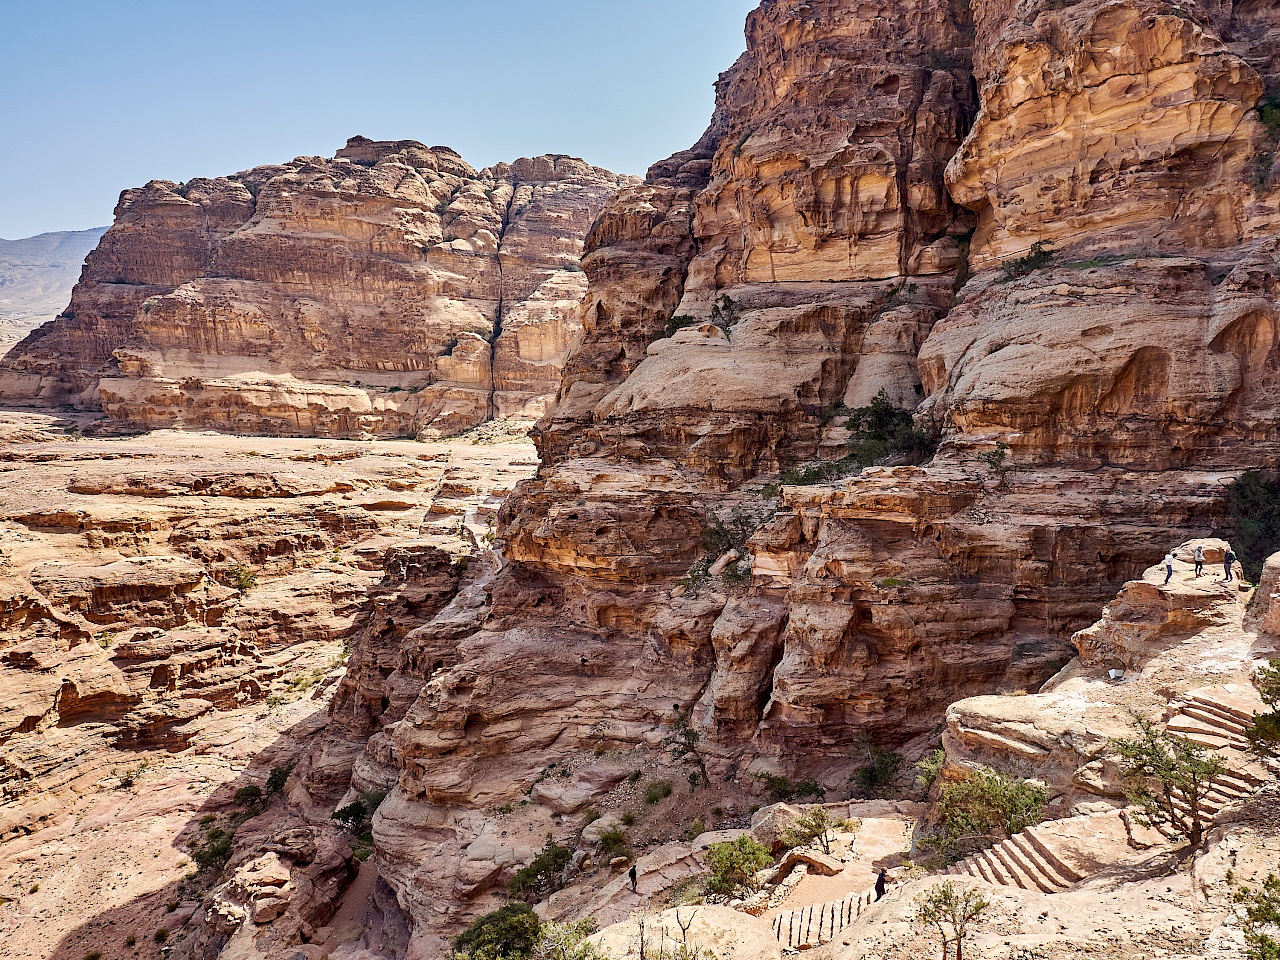 Fantastische Aussichten auf dem Weg nach Petra über den Hintereingang (Jordanien)